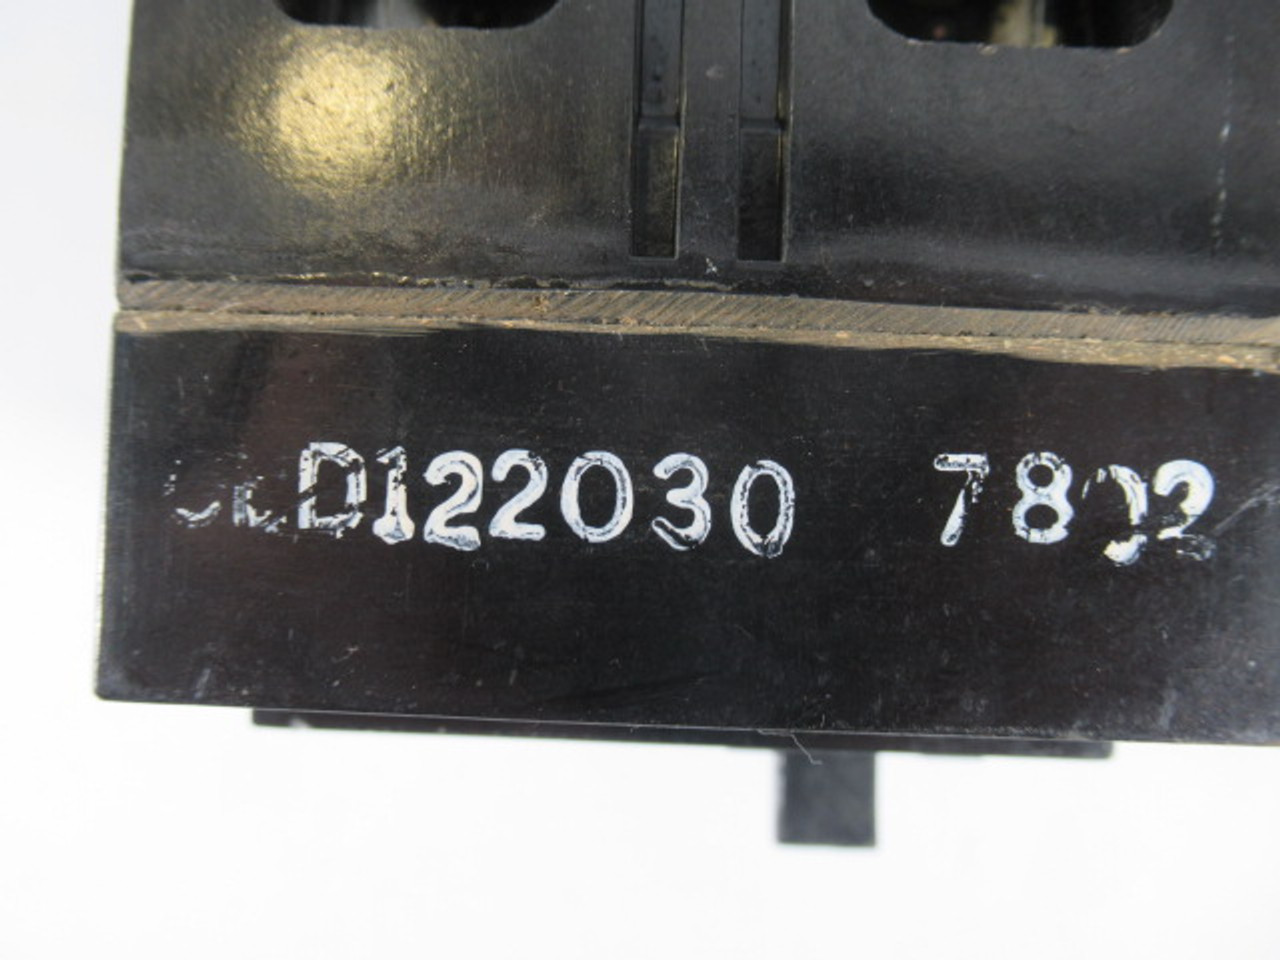 Federal Pioneer CED122030 Circuit Breaker 30A 2P Missing 2 Screws USED